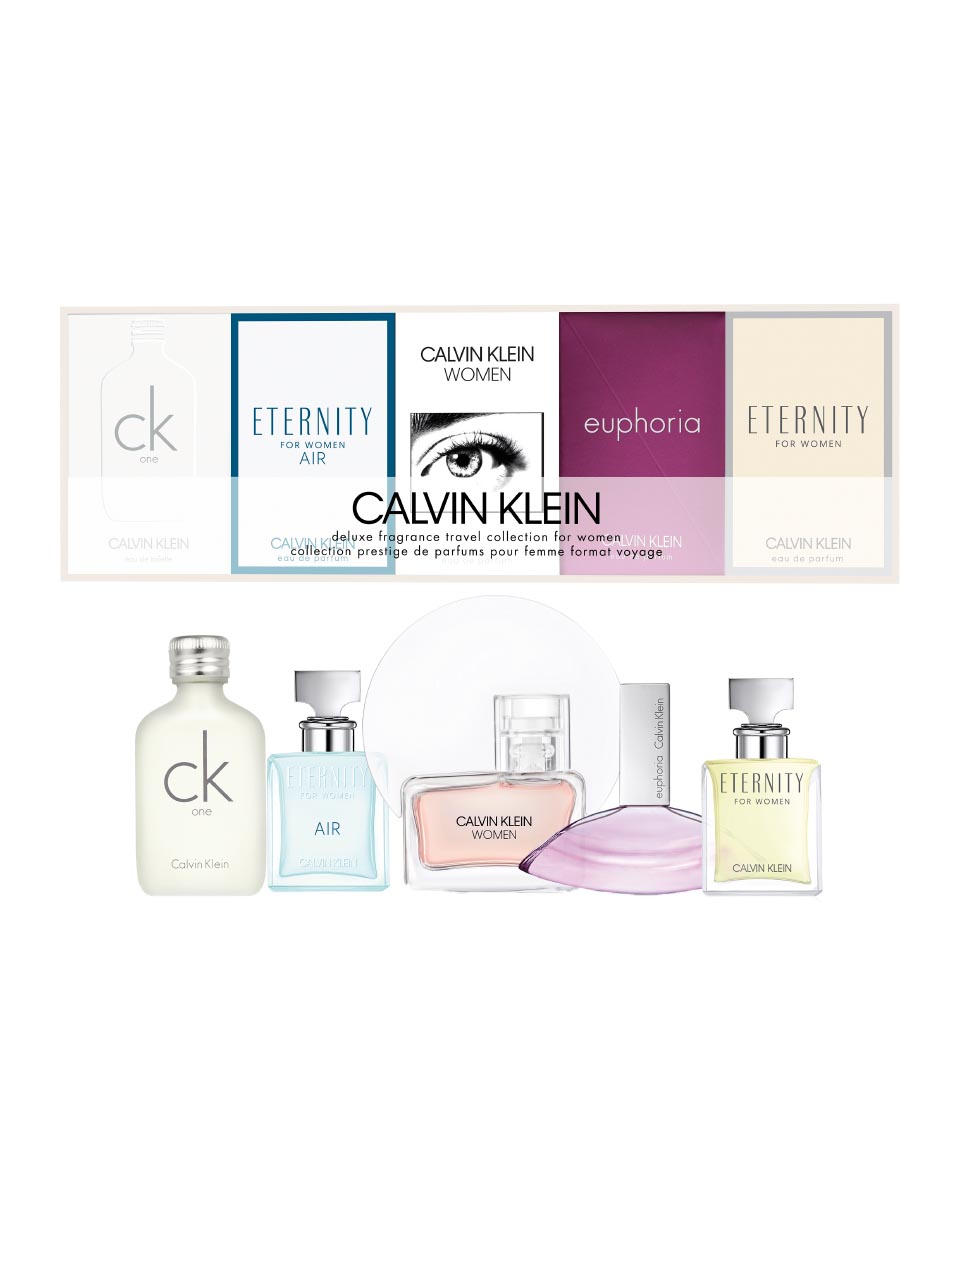 Calvin Klein Fragrance For Women